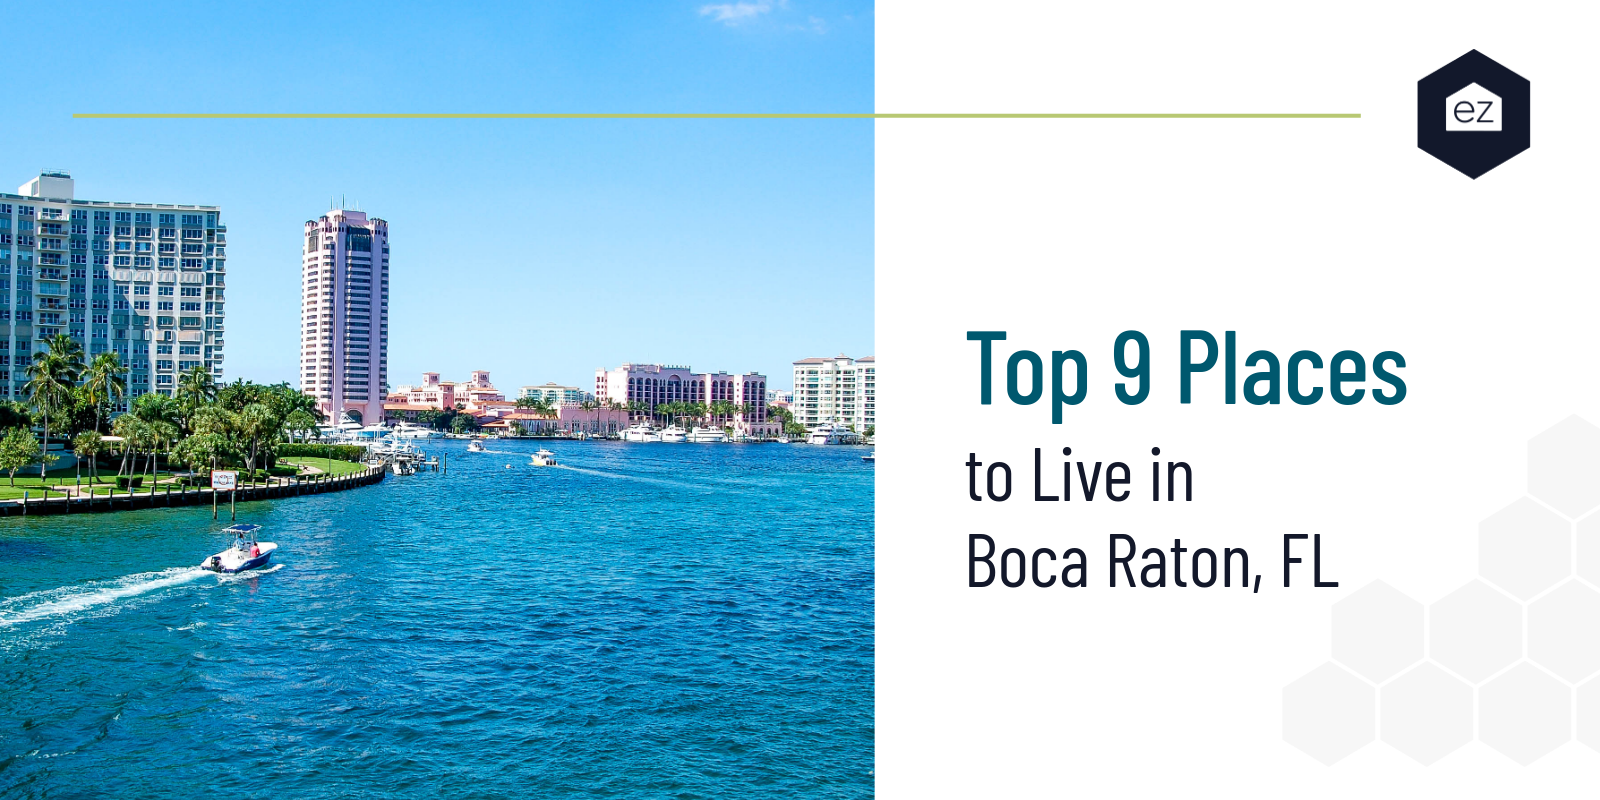 Boca Raton Florida USA